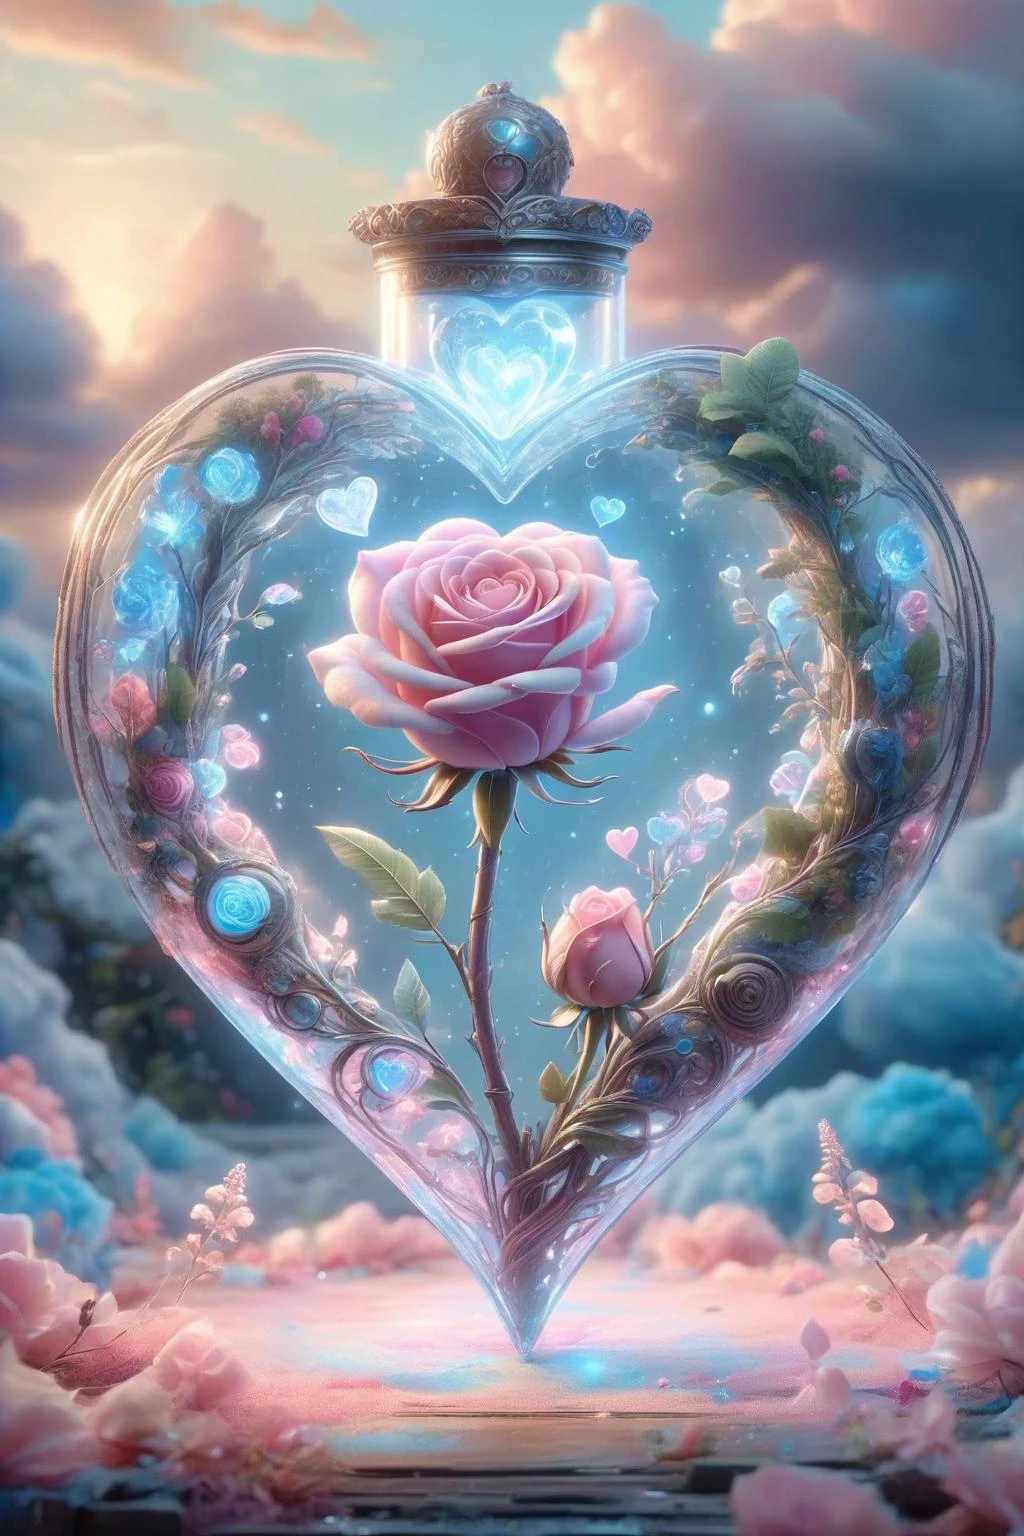 Digital Art,Konzeptkunst,Oktan-Rendering,unwirkliche Engine,Traumhafte Szenen,zartes und sattes Licht und Farbe,hervorragende Licht- und Schatteneffekte und Farbabstimmung,ästhetisch und romantisch,surrealistisch,magisch,Fantasie,fantastisch,Verziert und kompliziert,unvorstellbare Schönheit,
Ein leuchtendes [Rosa|lila] Rose und einige leuchtend blaue Pflanzen in einem transparenten (herzförmig:1.5) glass container,
dieser Behälter in einem Liebesgeschichtenbuch,extrem romantische Stimmung,Nostalgische Atmosphäre,sanftes Licht und anhaltende Komposition,Tiefenschärfe,Abonnieren,Zuckerwatte,